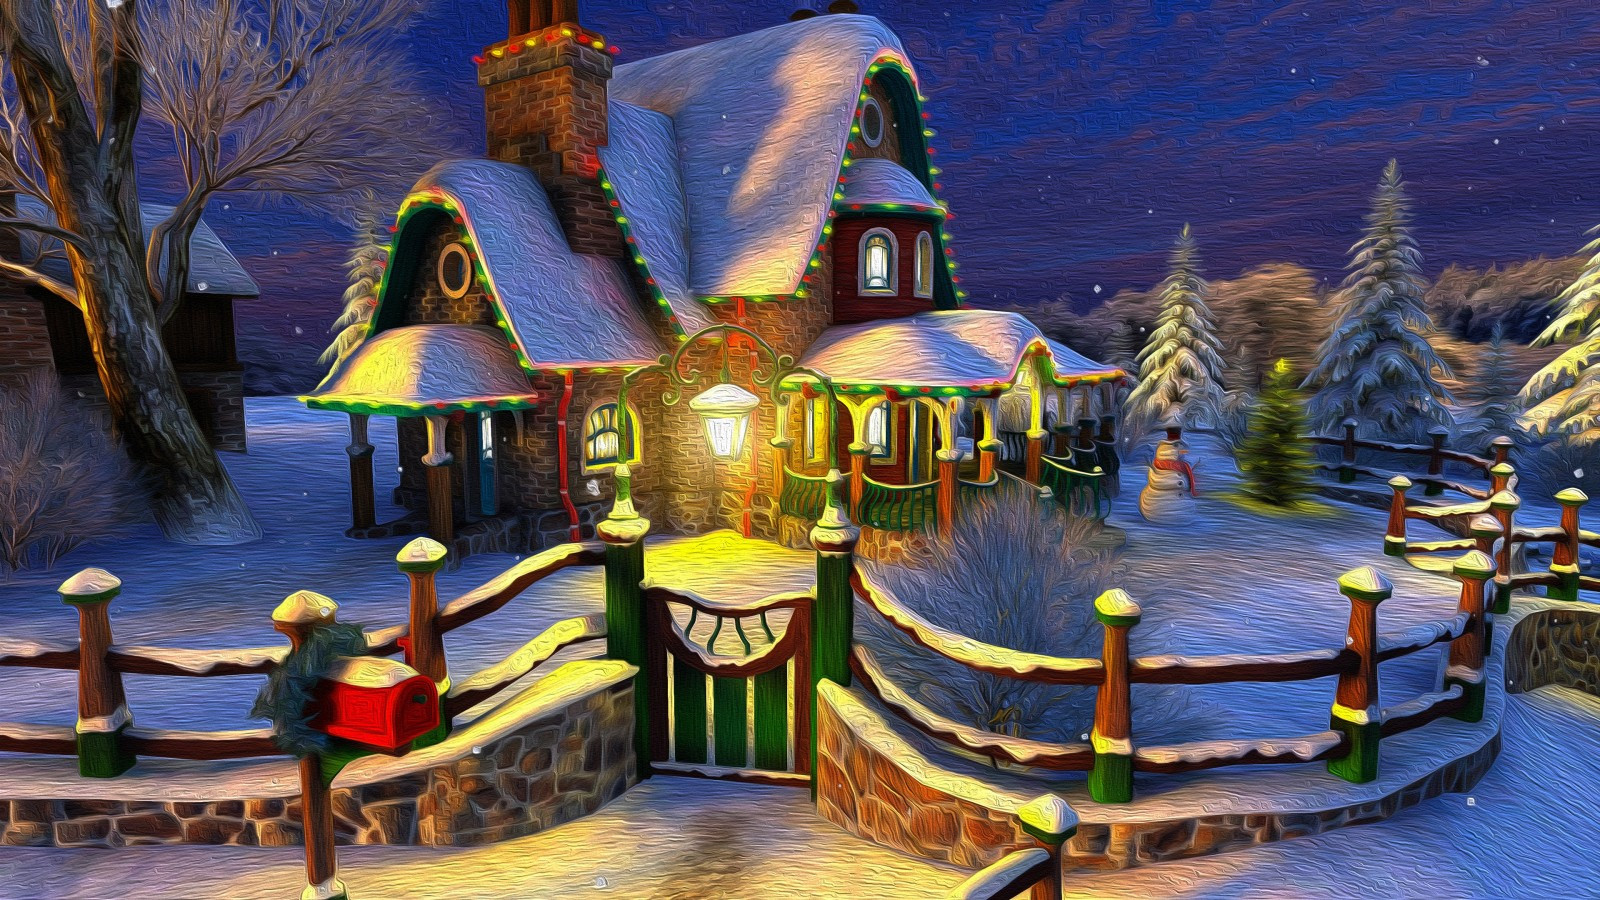 Download 1600x900 Cozy House, Christmas Door, Fence, Snow, Winter Wallpaper